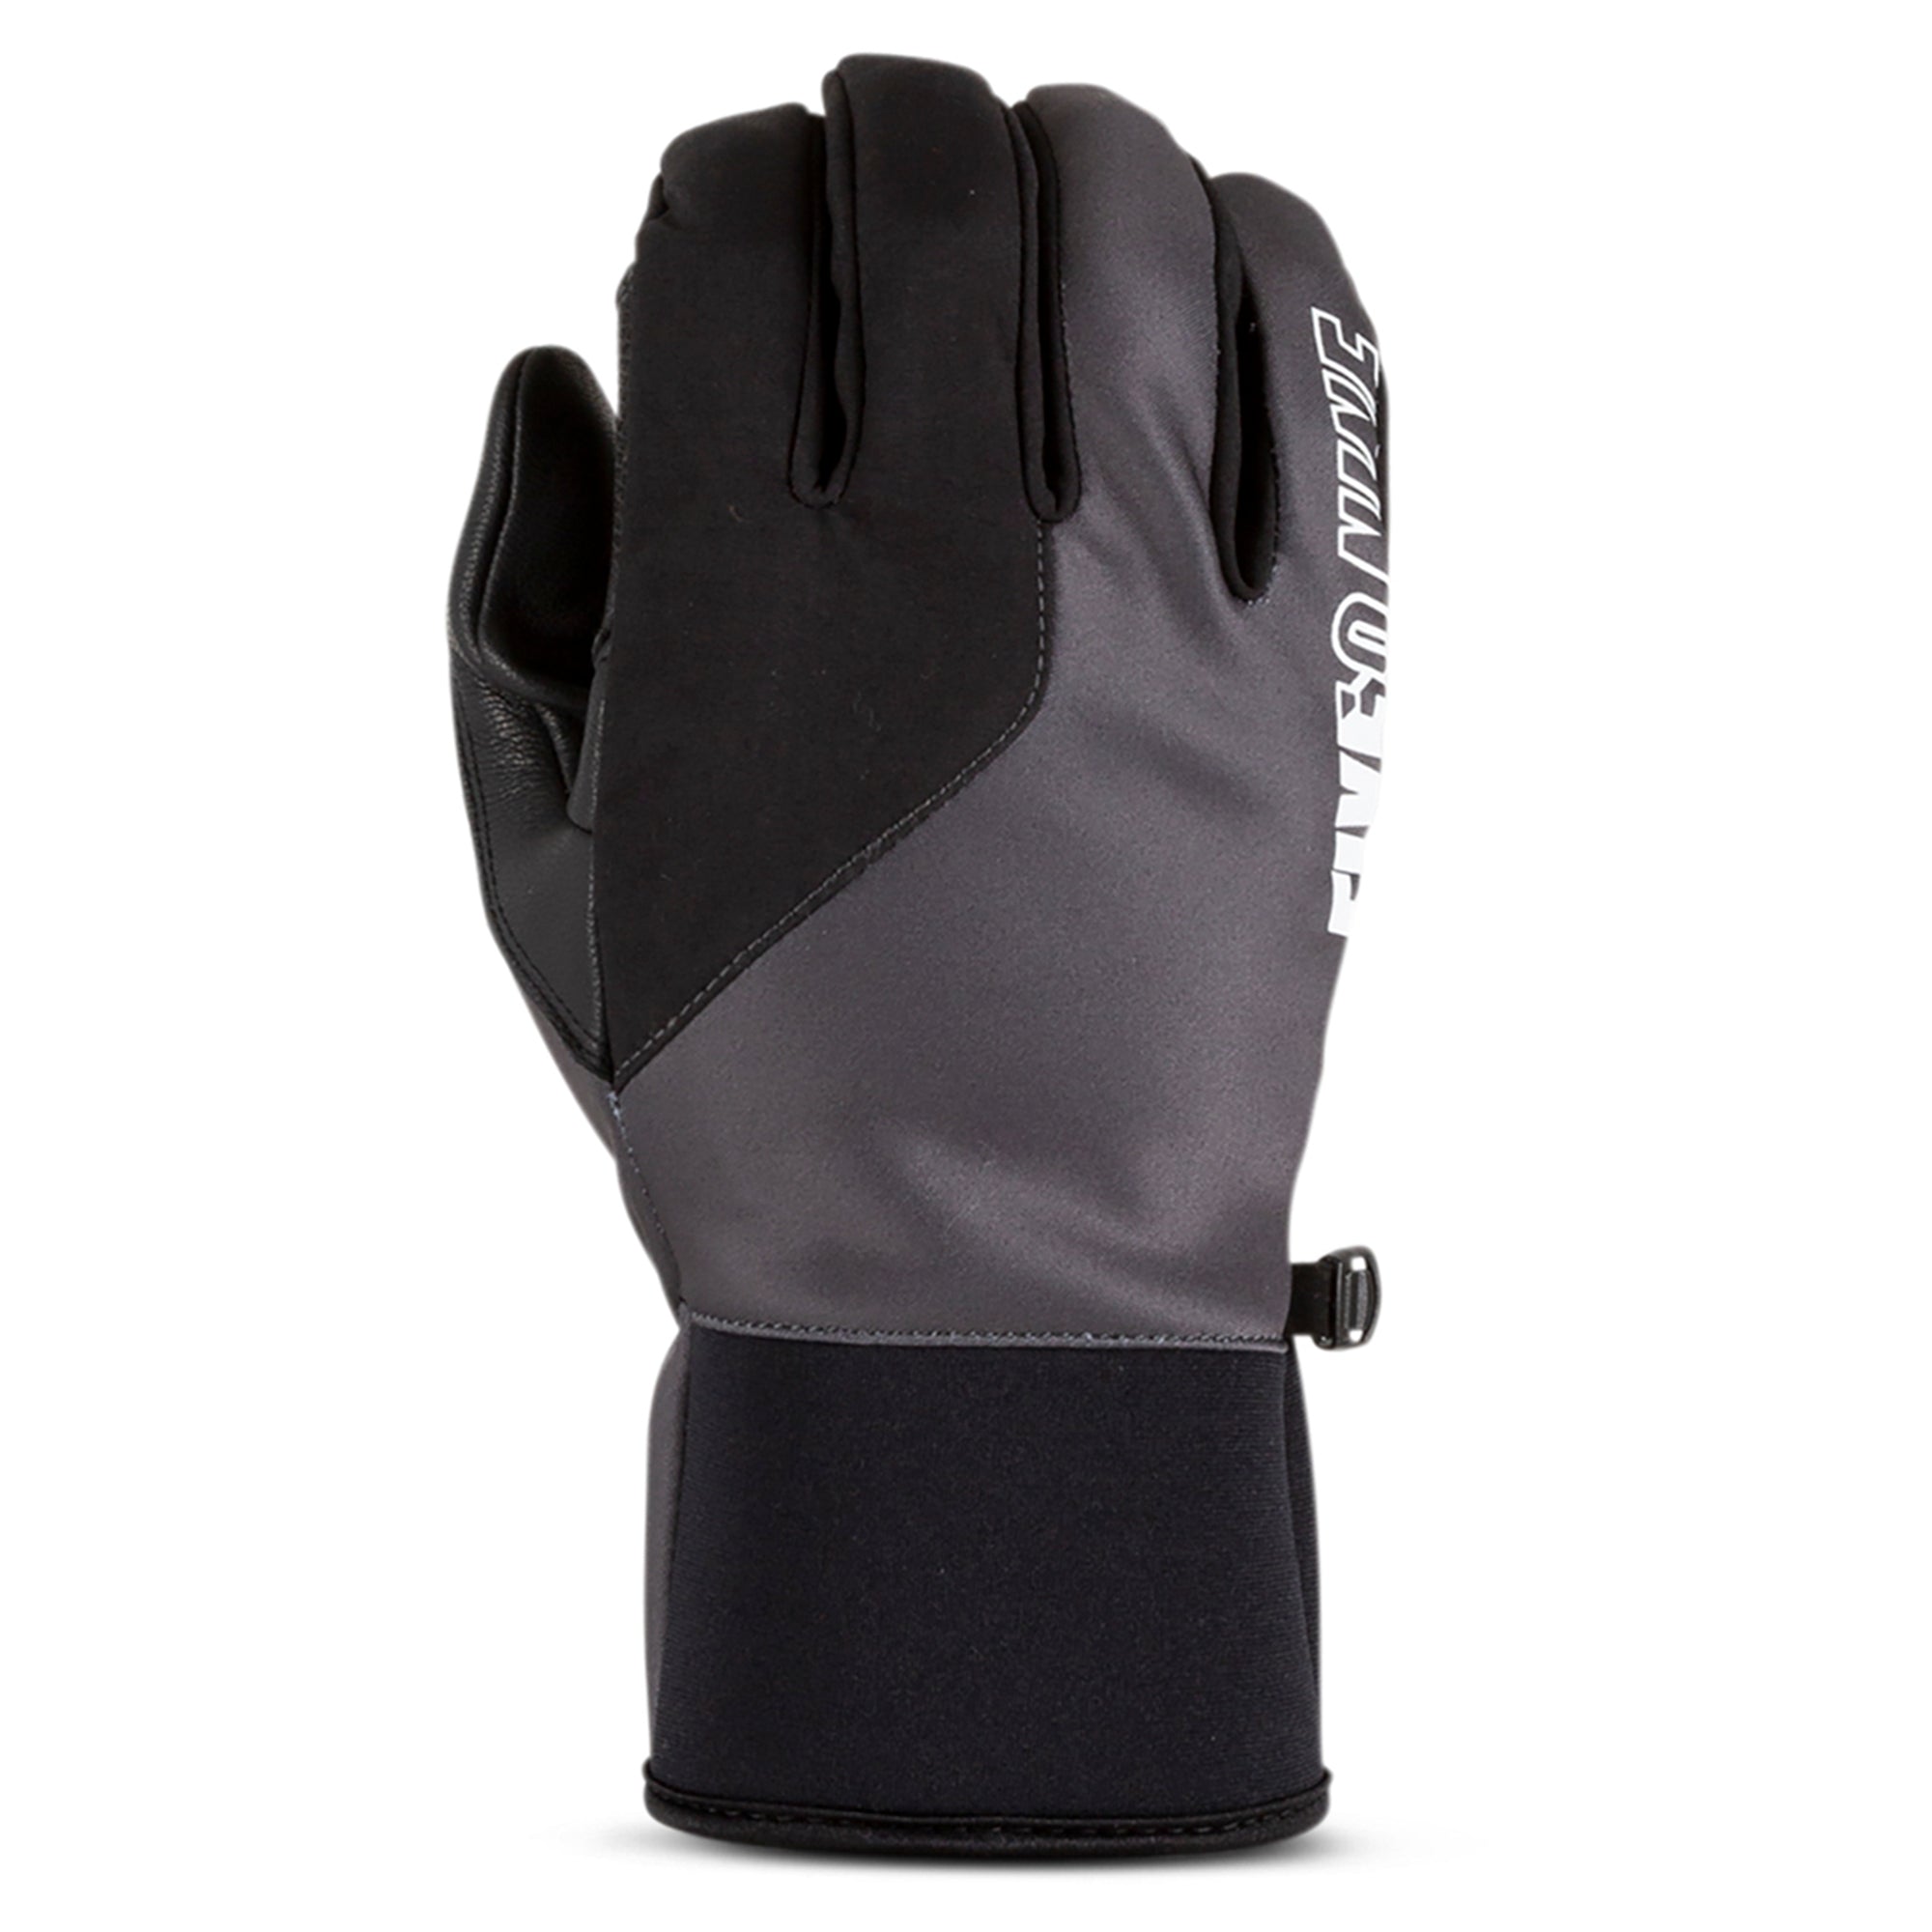 509 Factor Pro Glove